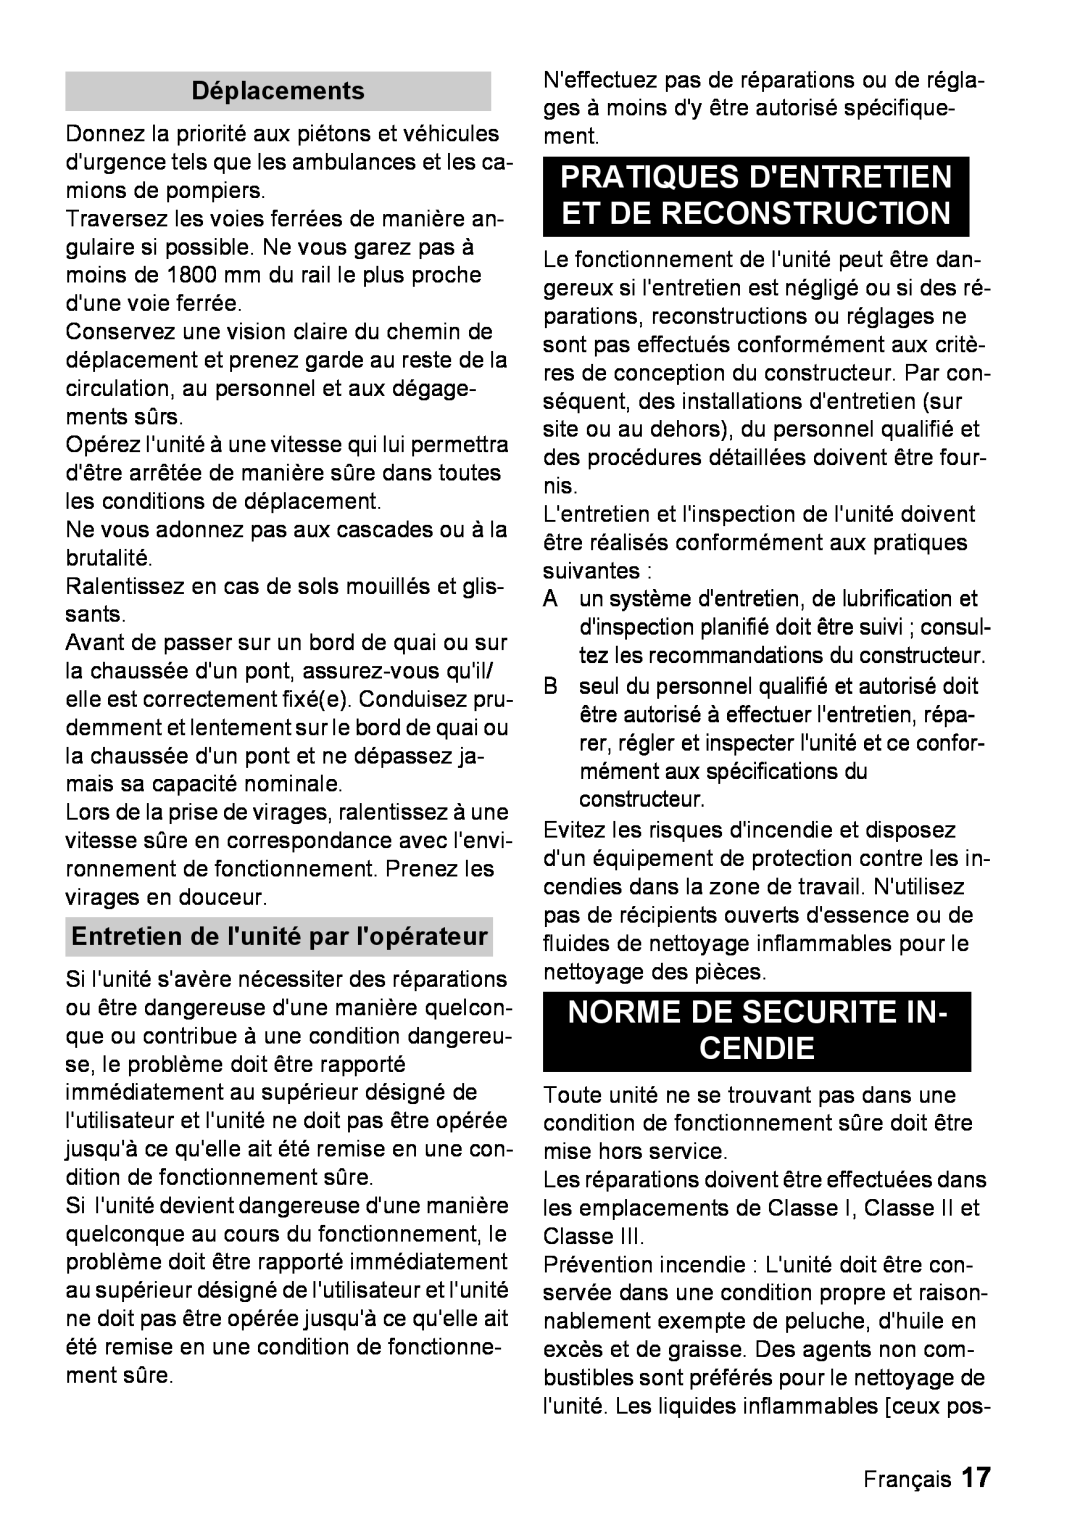 Windsor 16 manual Pratiques Dentretien Et De Reconstruction, Norme De Securite In Cendie, Déplacements 